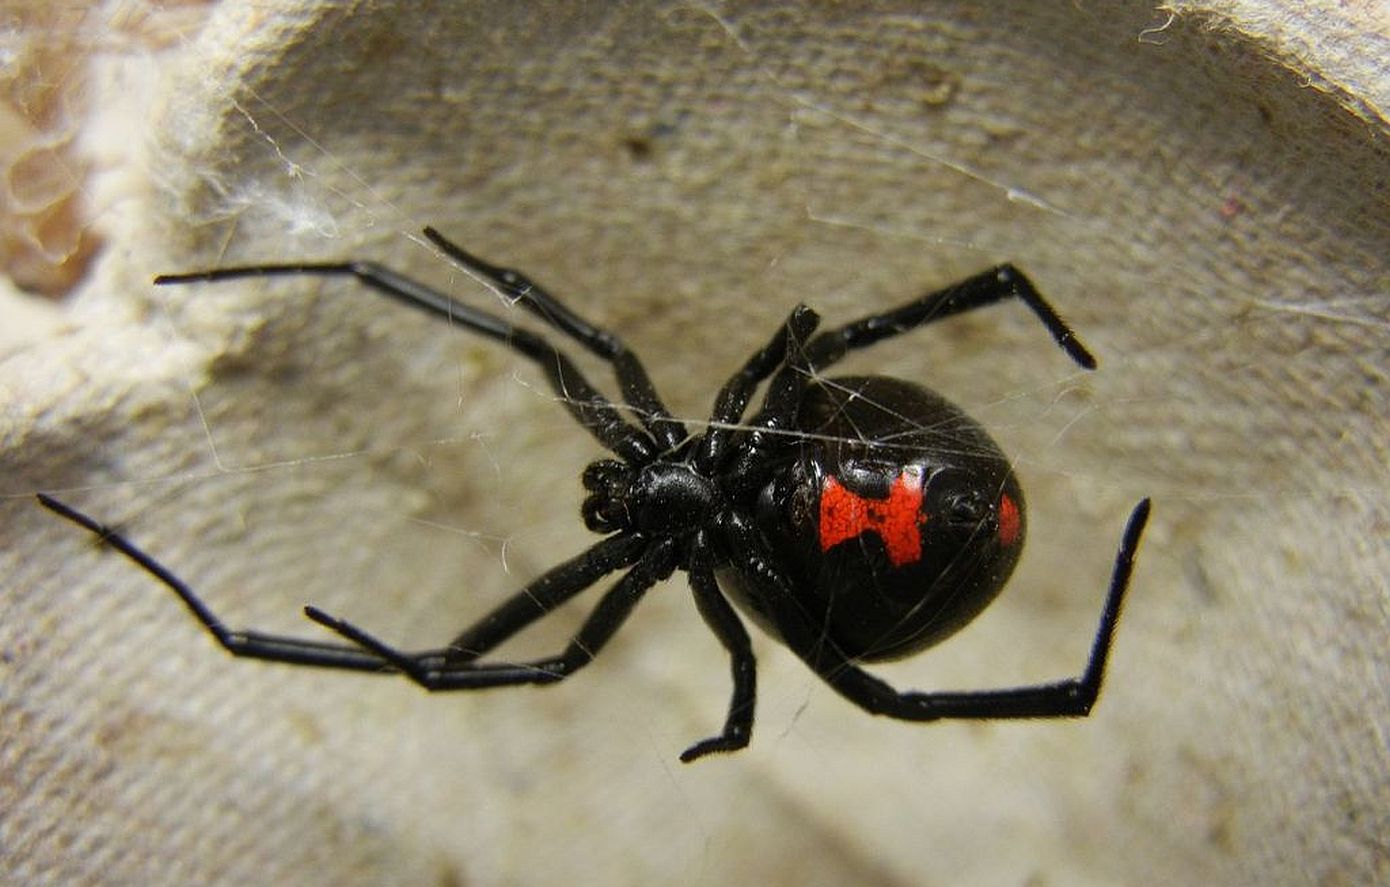 Τσίμπημα από αράχνη «Μαύρη Χήρα» δέχθηκε 35χρονος στη Λευκάδα